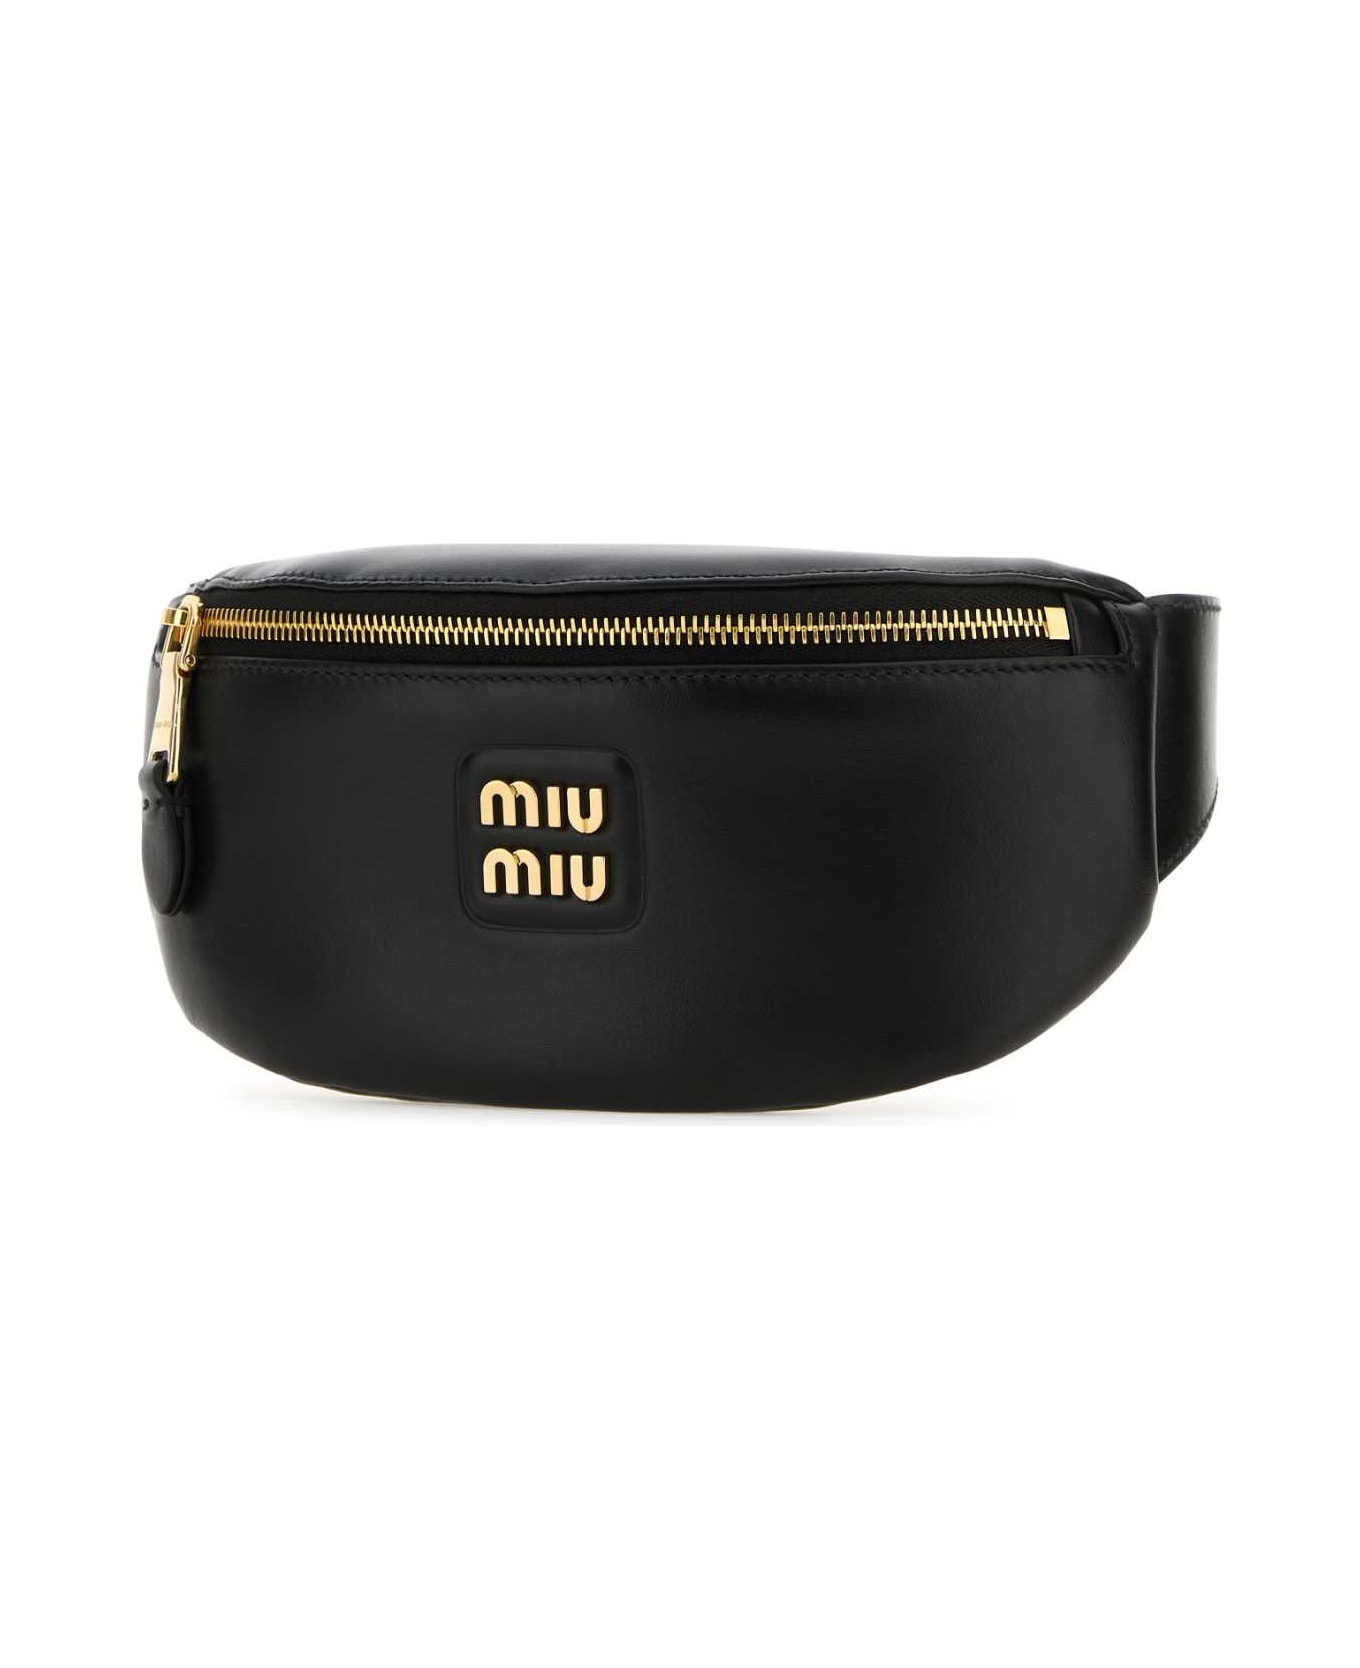 Miu Miu Black Leather Belt Bag - NERO